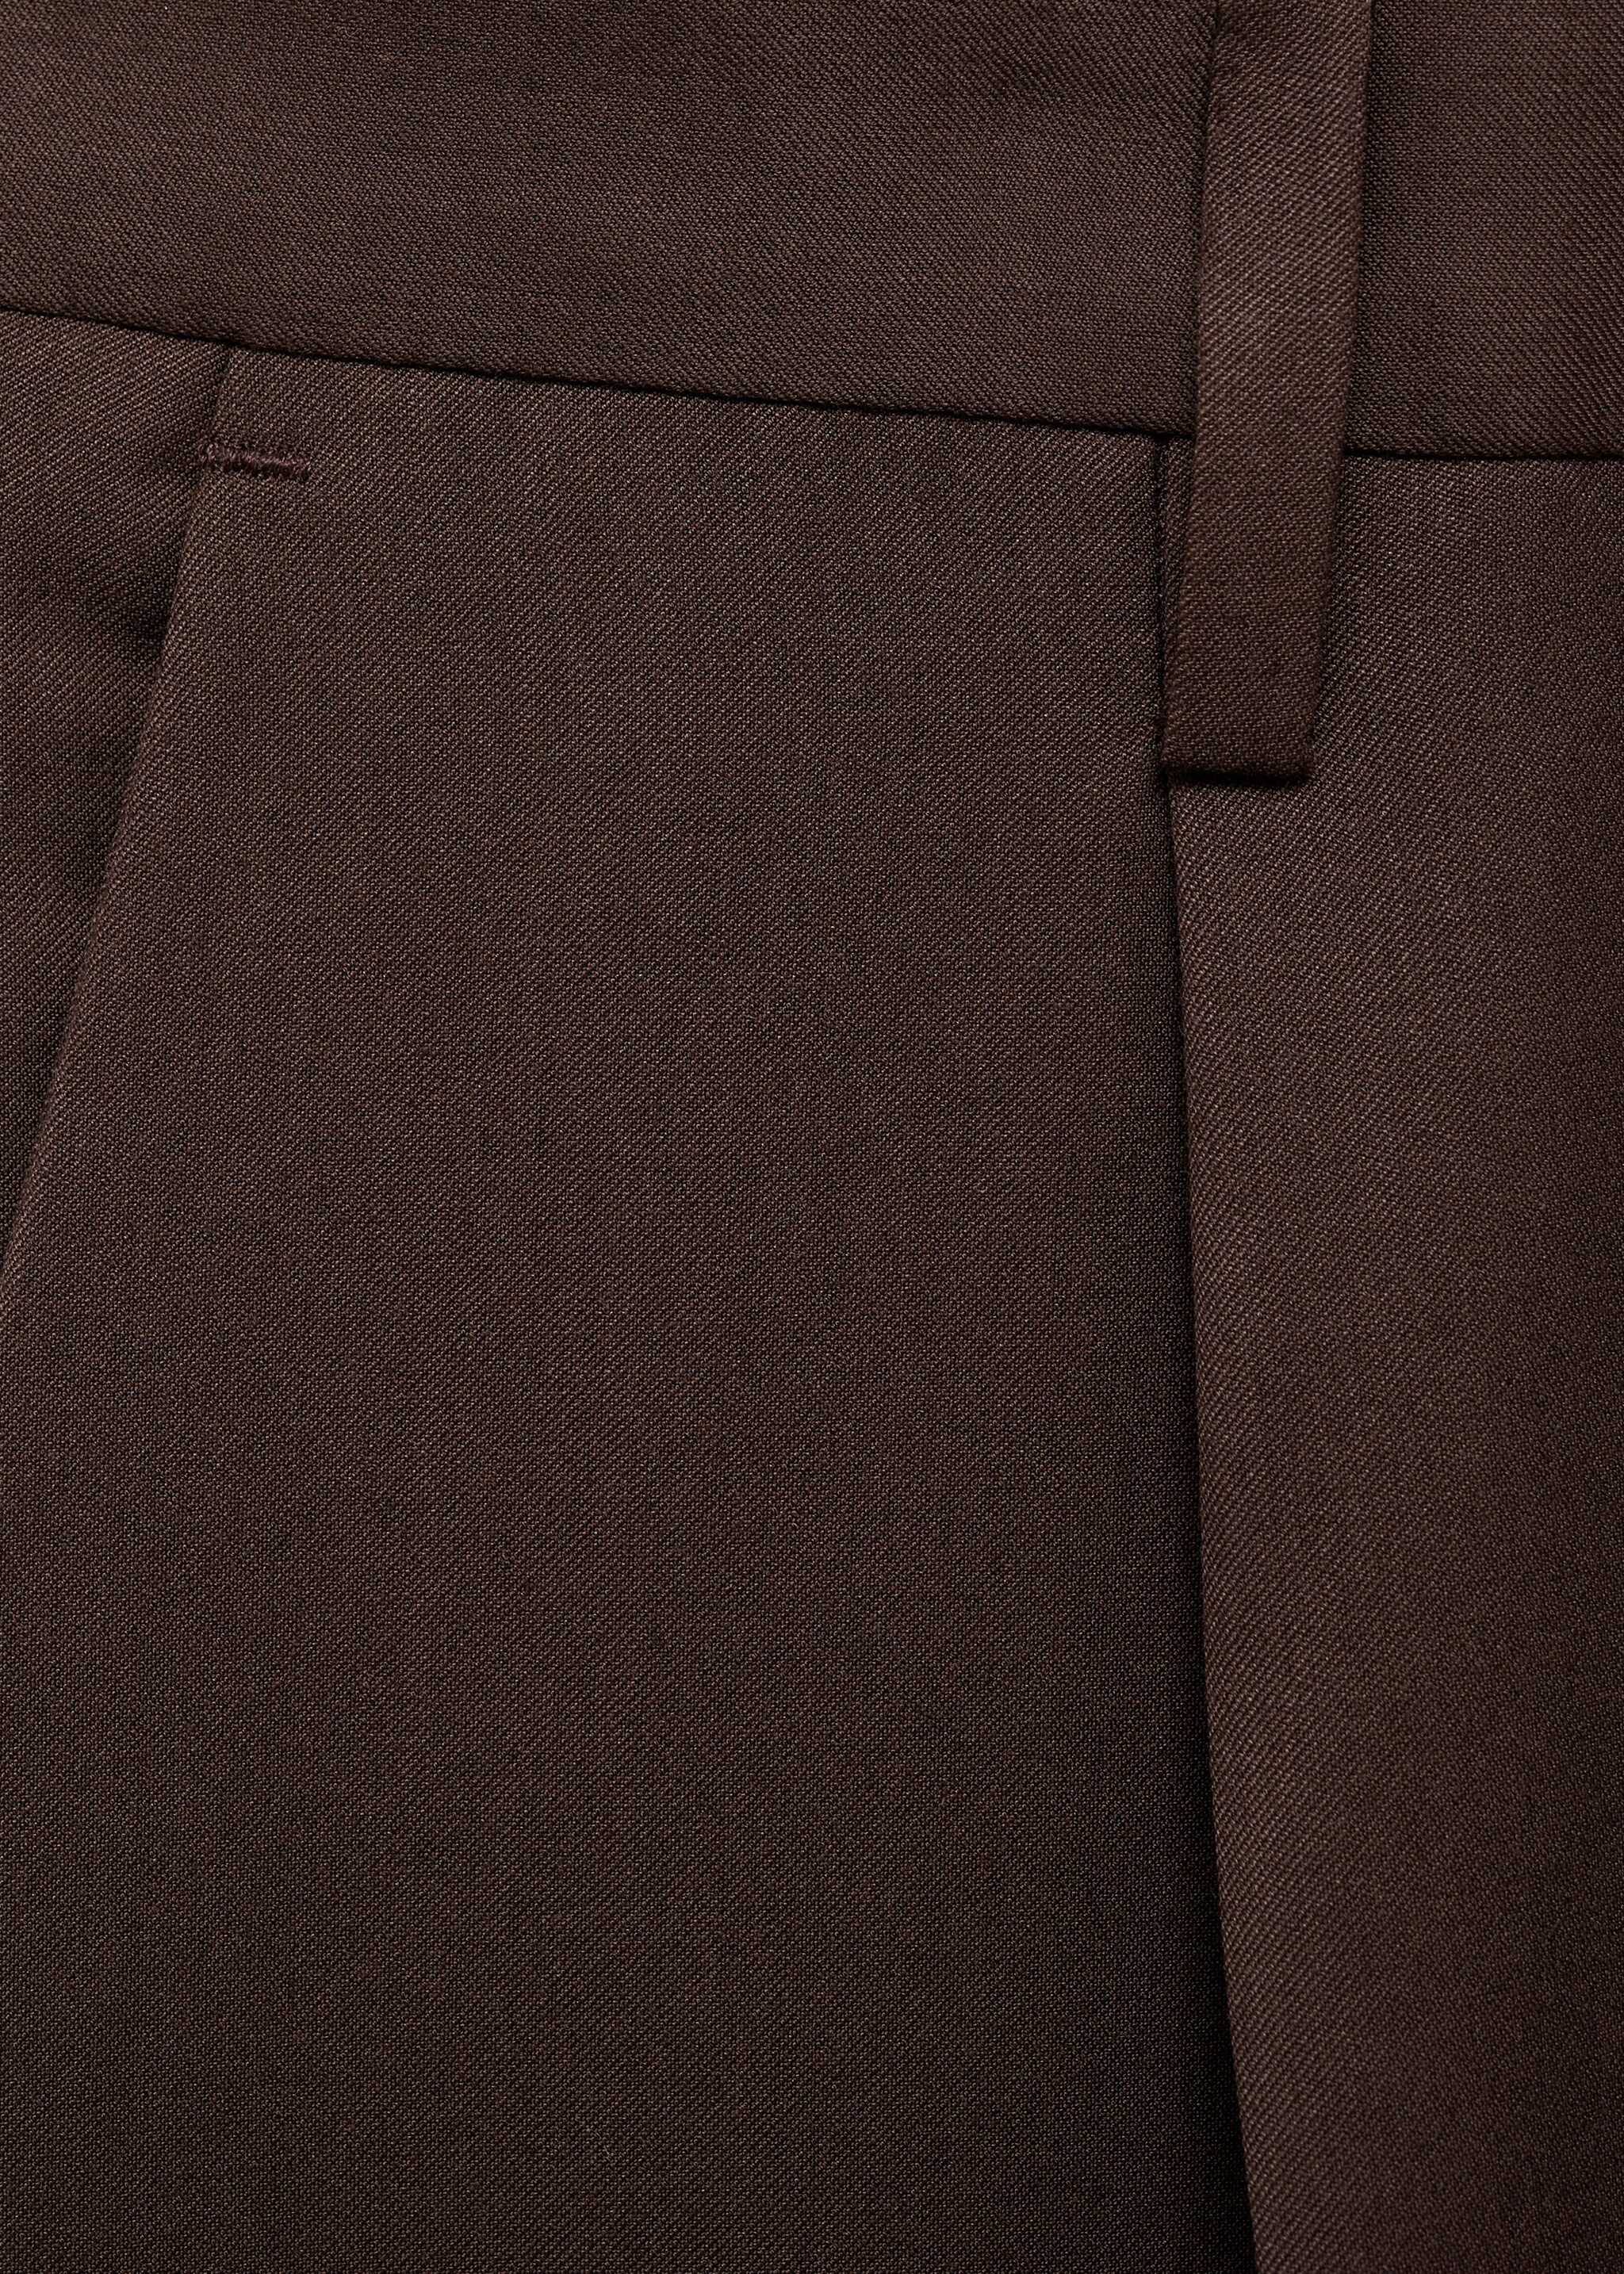 Pantalón traje regular fit pinzas - Detalle del artículo 0